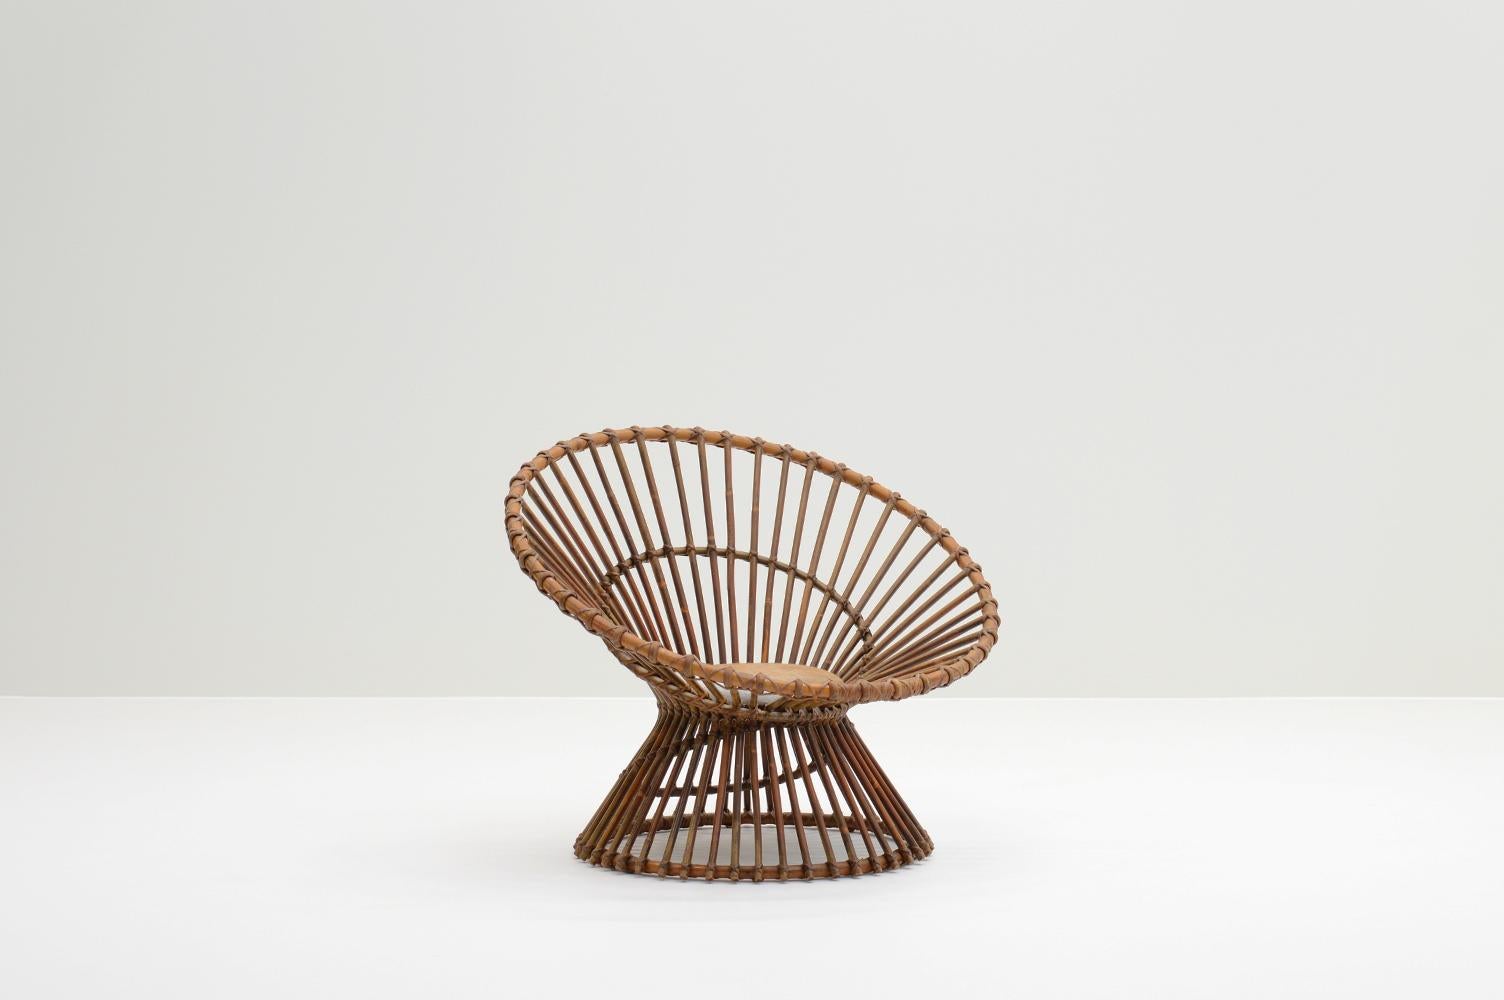 Handgefertigter Rattan-Sessel, Italien 60er Jahre. Organische Form und schöne Farbe / Patina. Mit neu gepolstertem Rindslederkissen. Hat einige Abnutzungserscheinungen im Laufe der Jahre, aber insgesamt in gutem Vintage-Zustand.

Fordern Sie einen